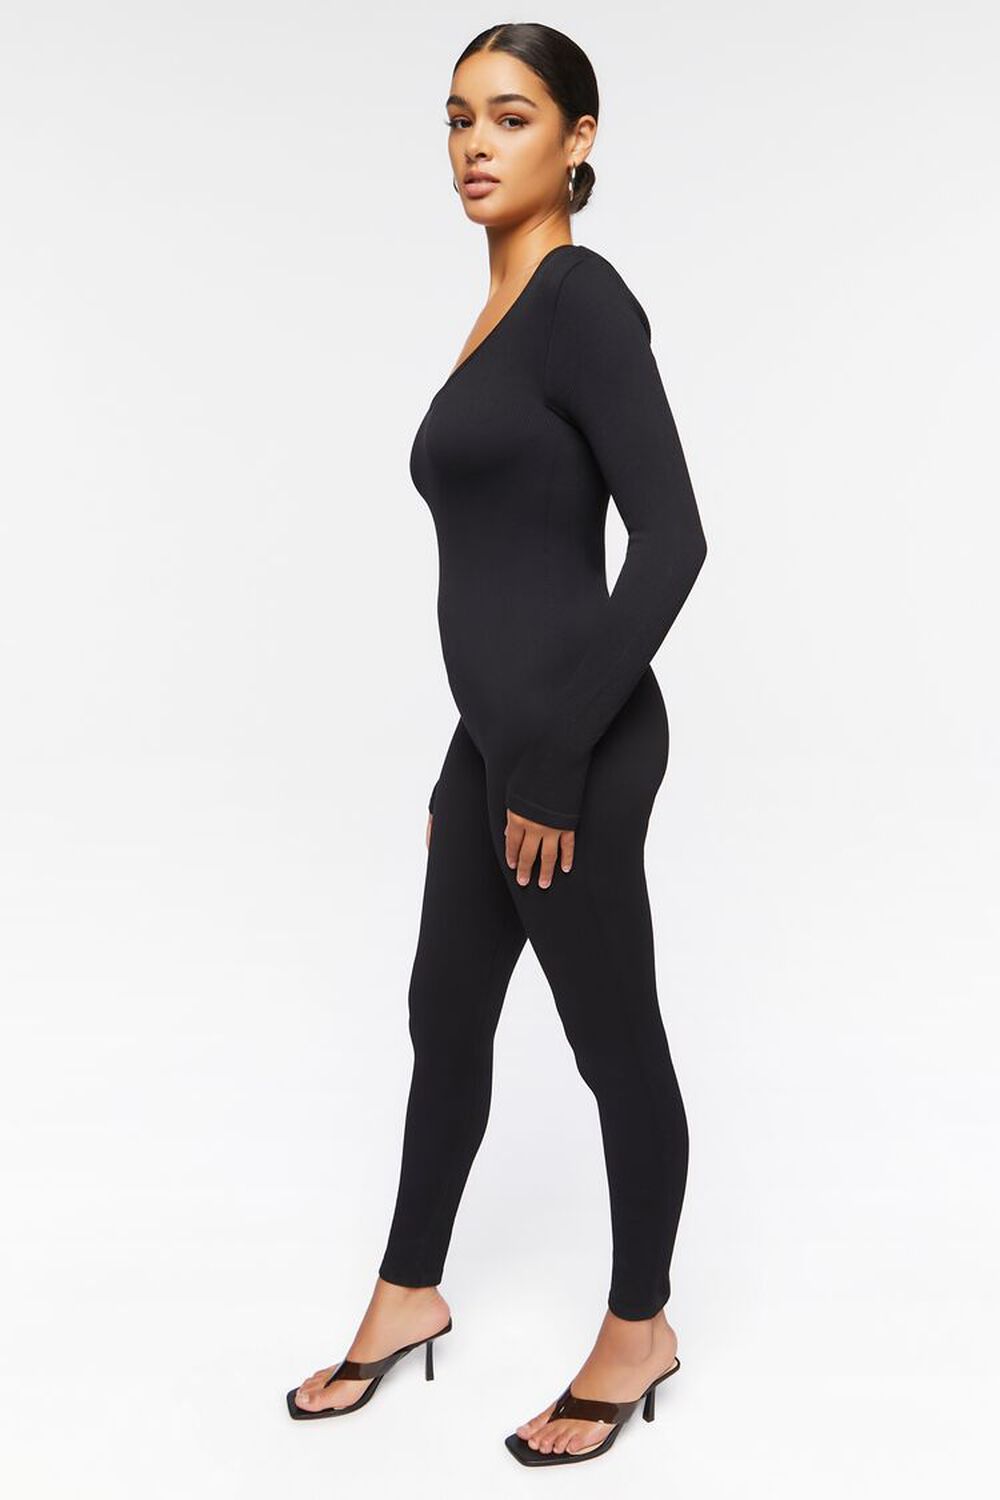 BLACK Seamless Long-Sleeve Jumpsuit, image 2